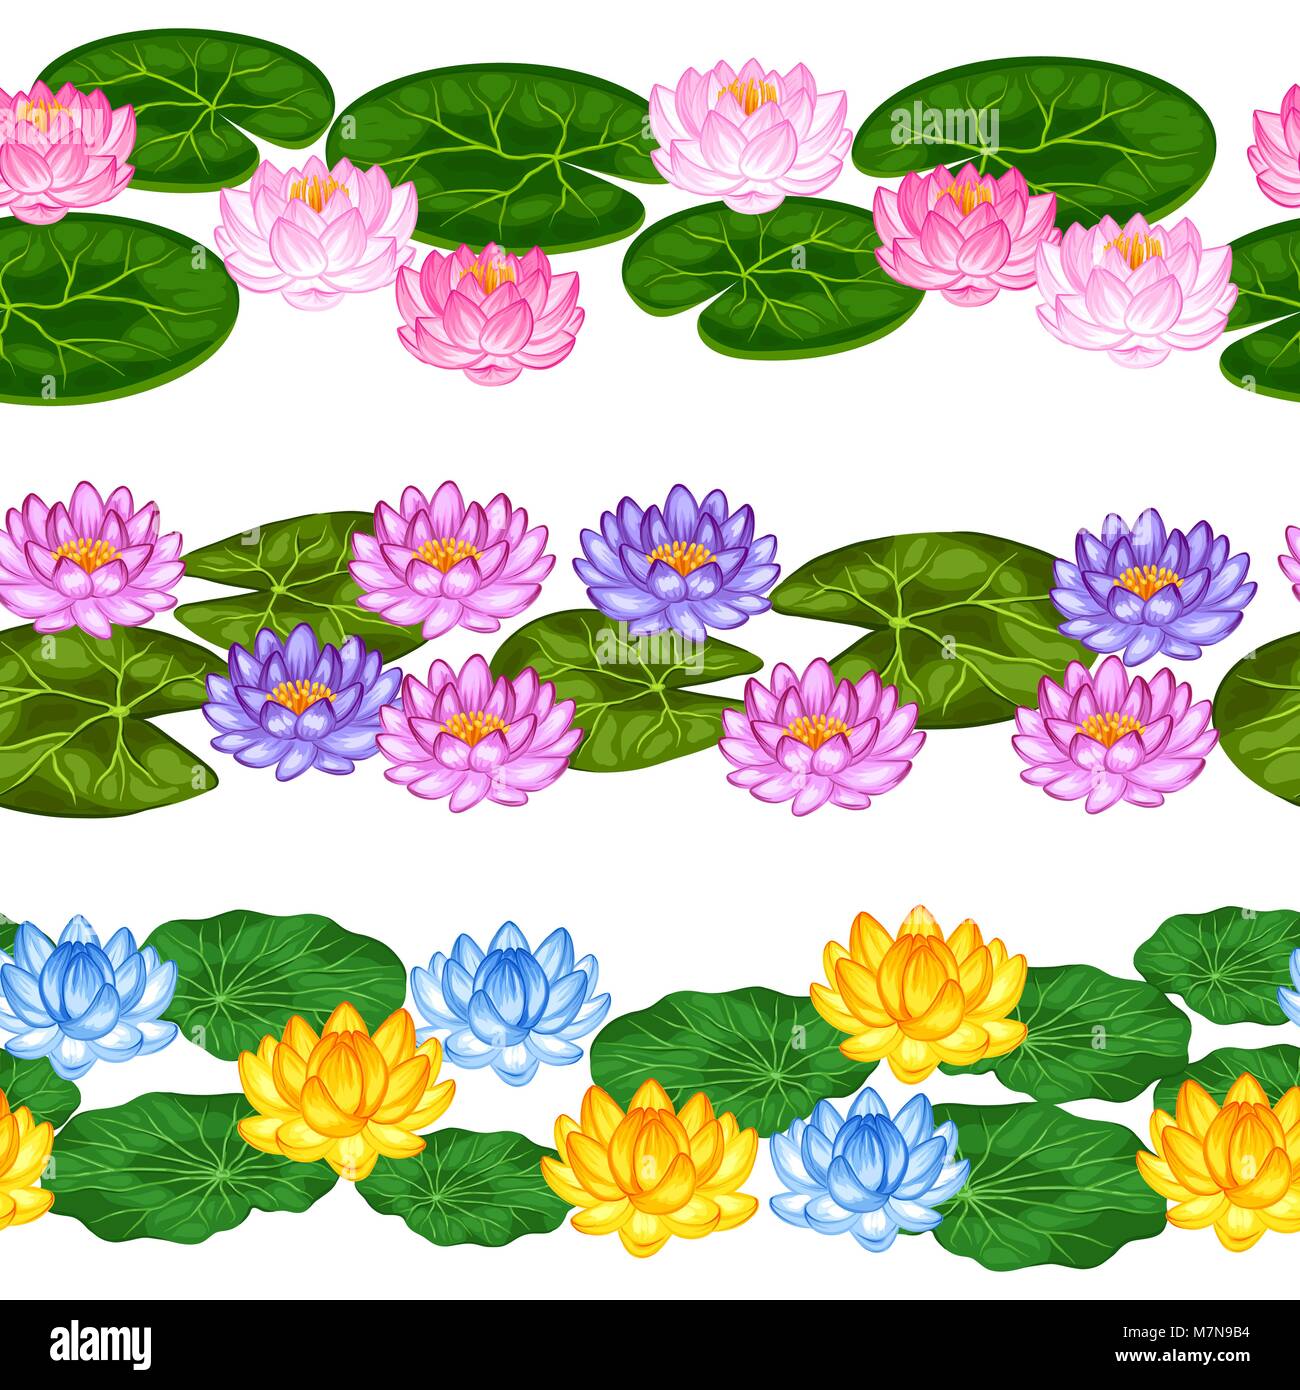 Natürliche nahtlose Grenzen mit Lotus Blumen und Blätter. Hintergrund ohne freistellungsmaske gemacht. Einfach für Hintergrund, Textil, Verpackung Papier Stock Vektor